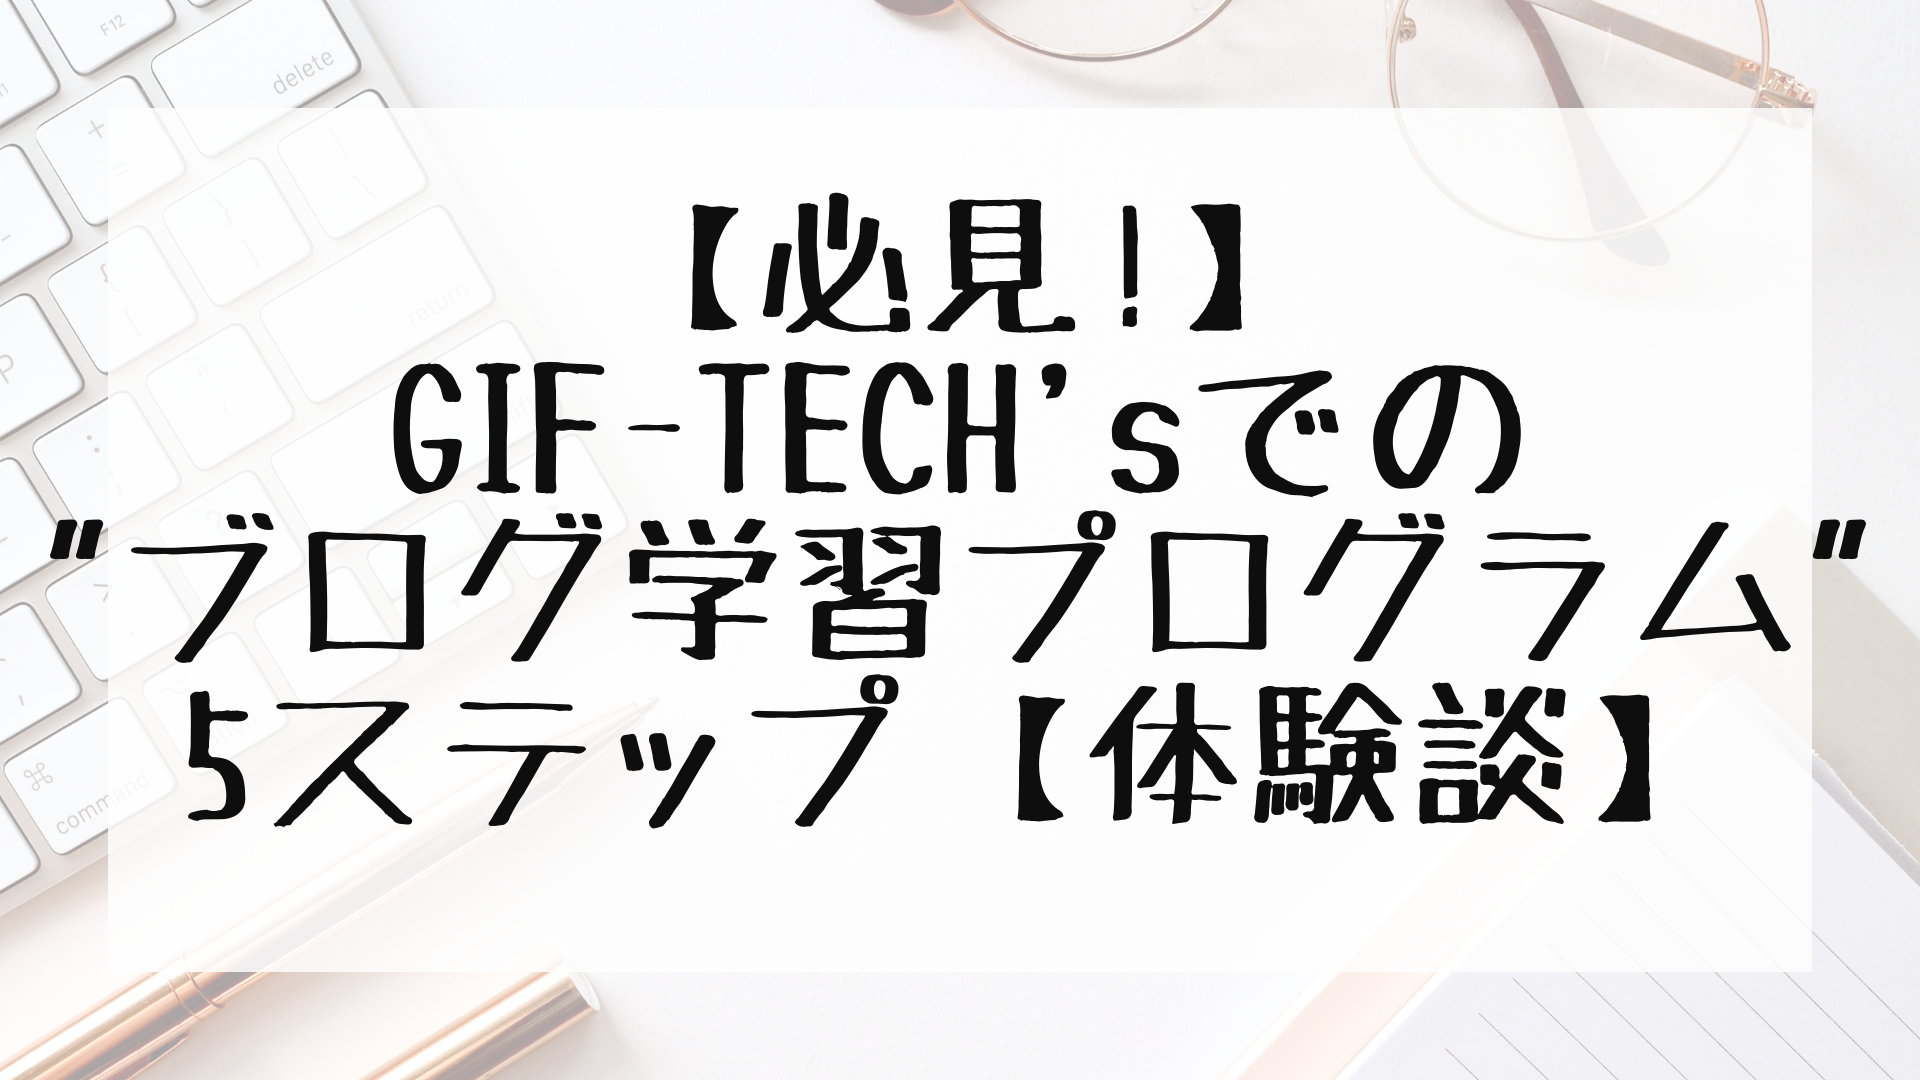 【必見!】GIF-TECH'sでの"ブログ学習プログラム"5ステップ【体験談】